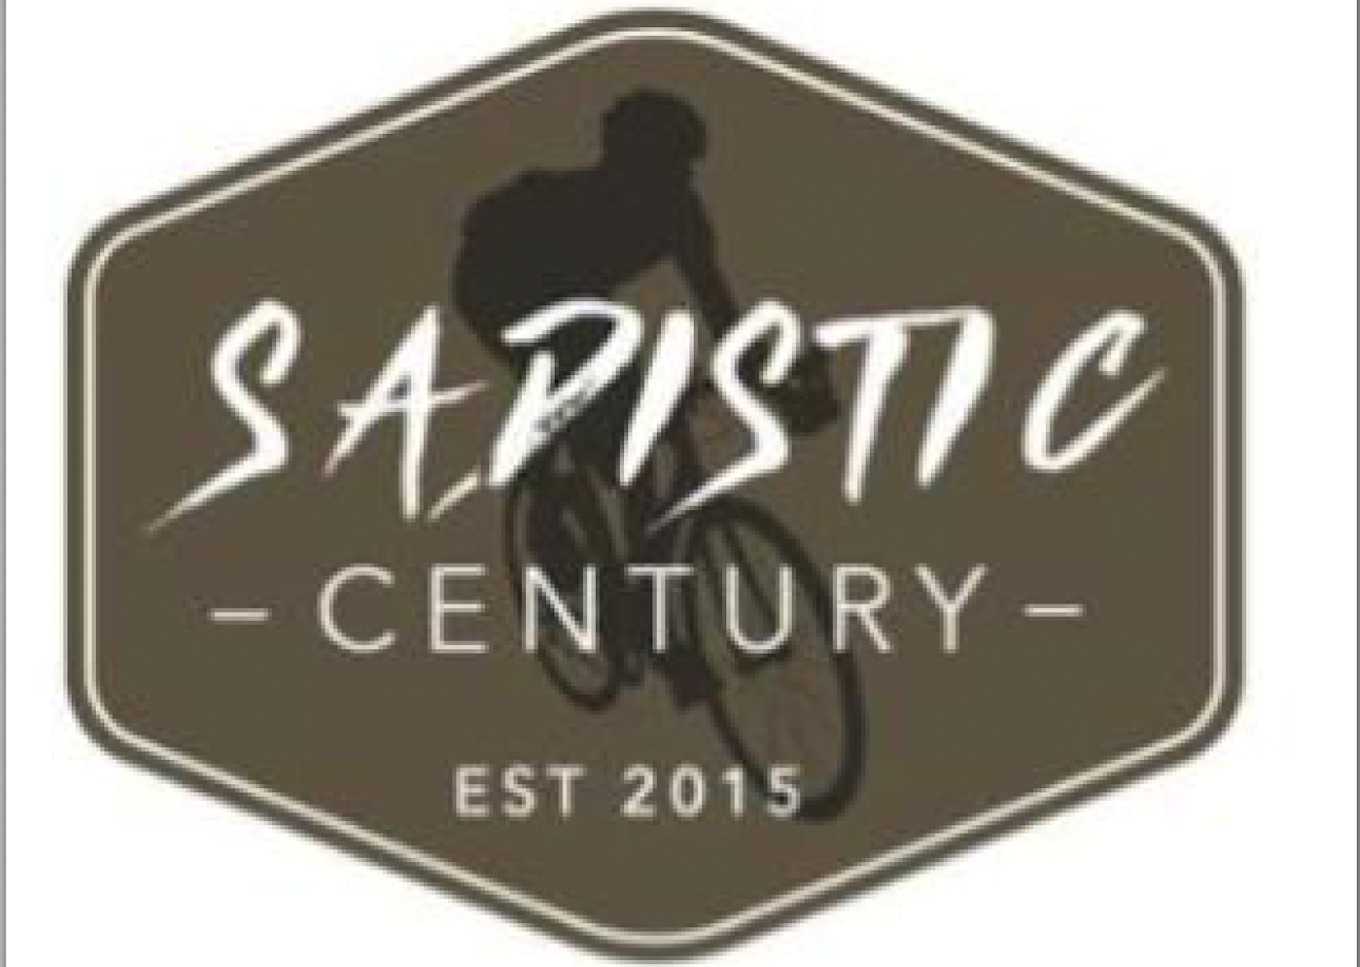 Sadistic Century